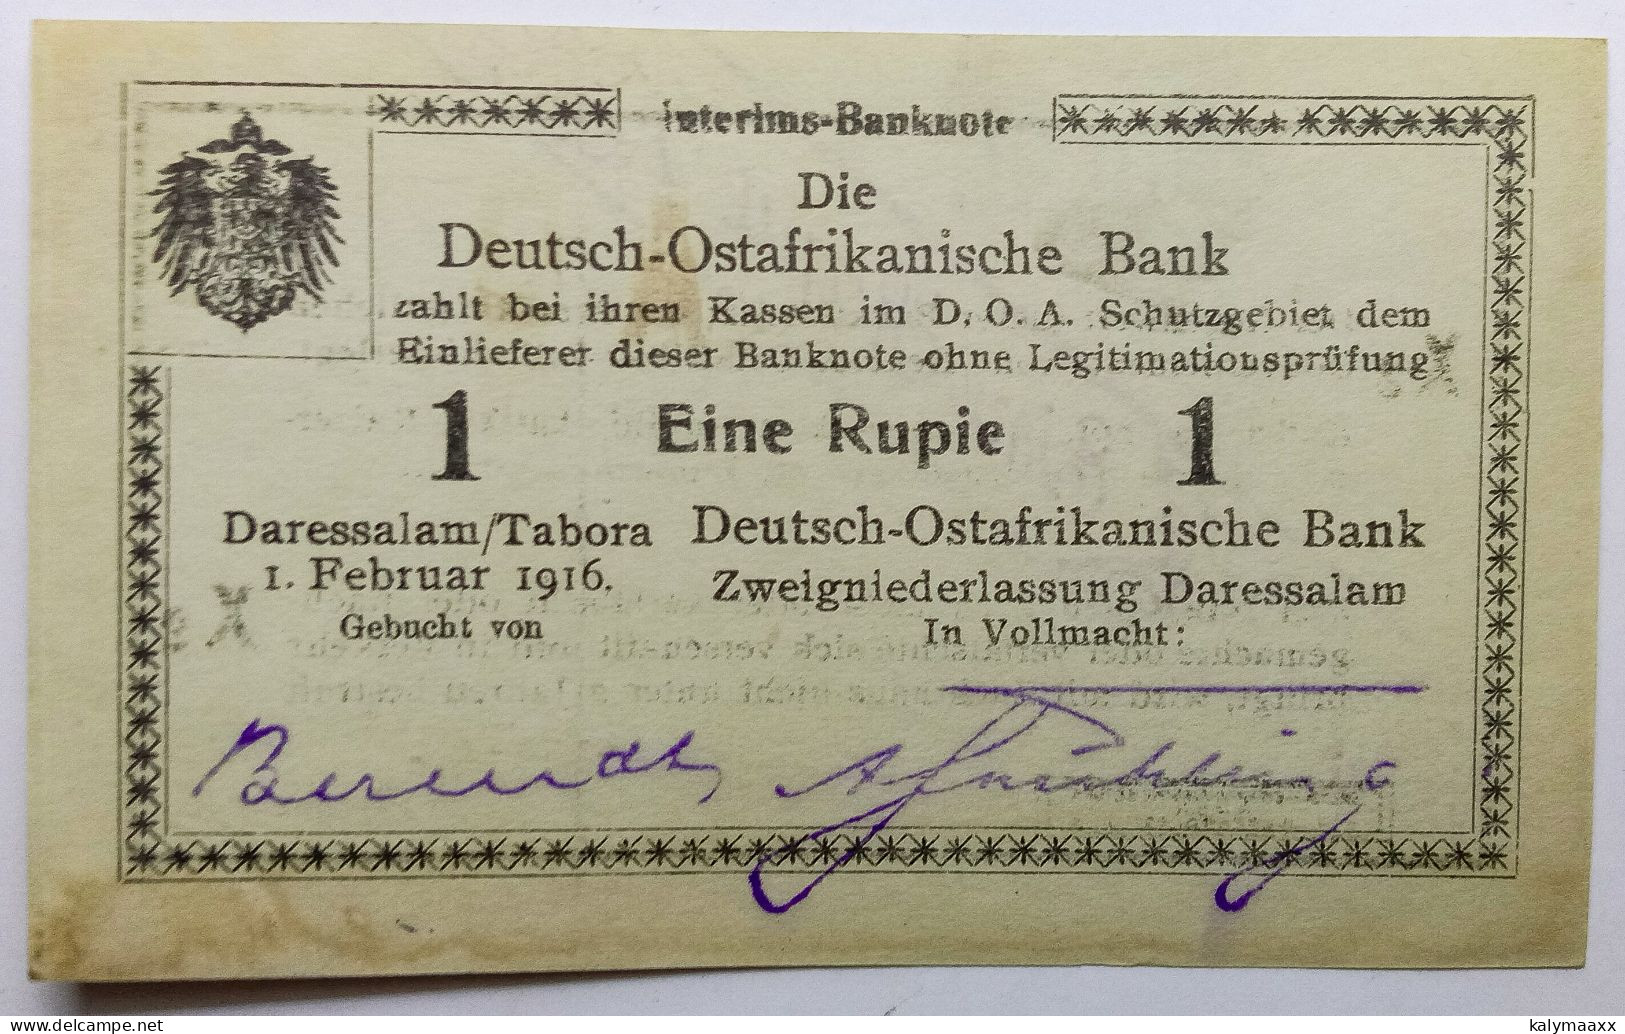 GERMAN EAST AFRICA 1916 1 RUPIE, EINE RUPIE, INTERIMS BANK NOTE, WW I....ERROR IN SERIAL NUMBER, 4 WRITTEN BY PEN - Deutsch-Ostafrika